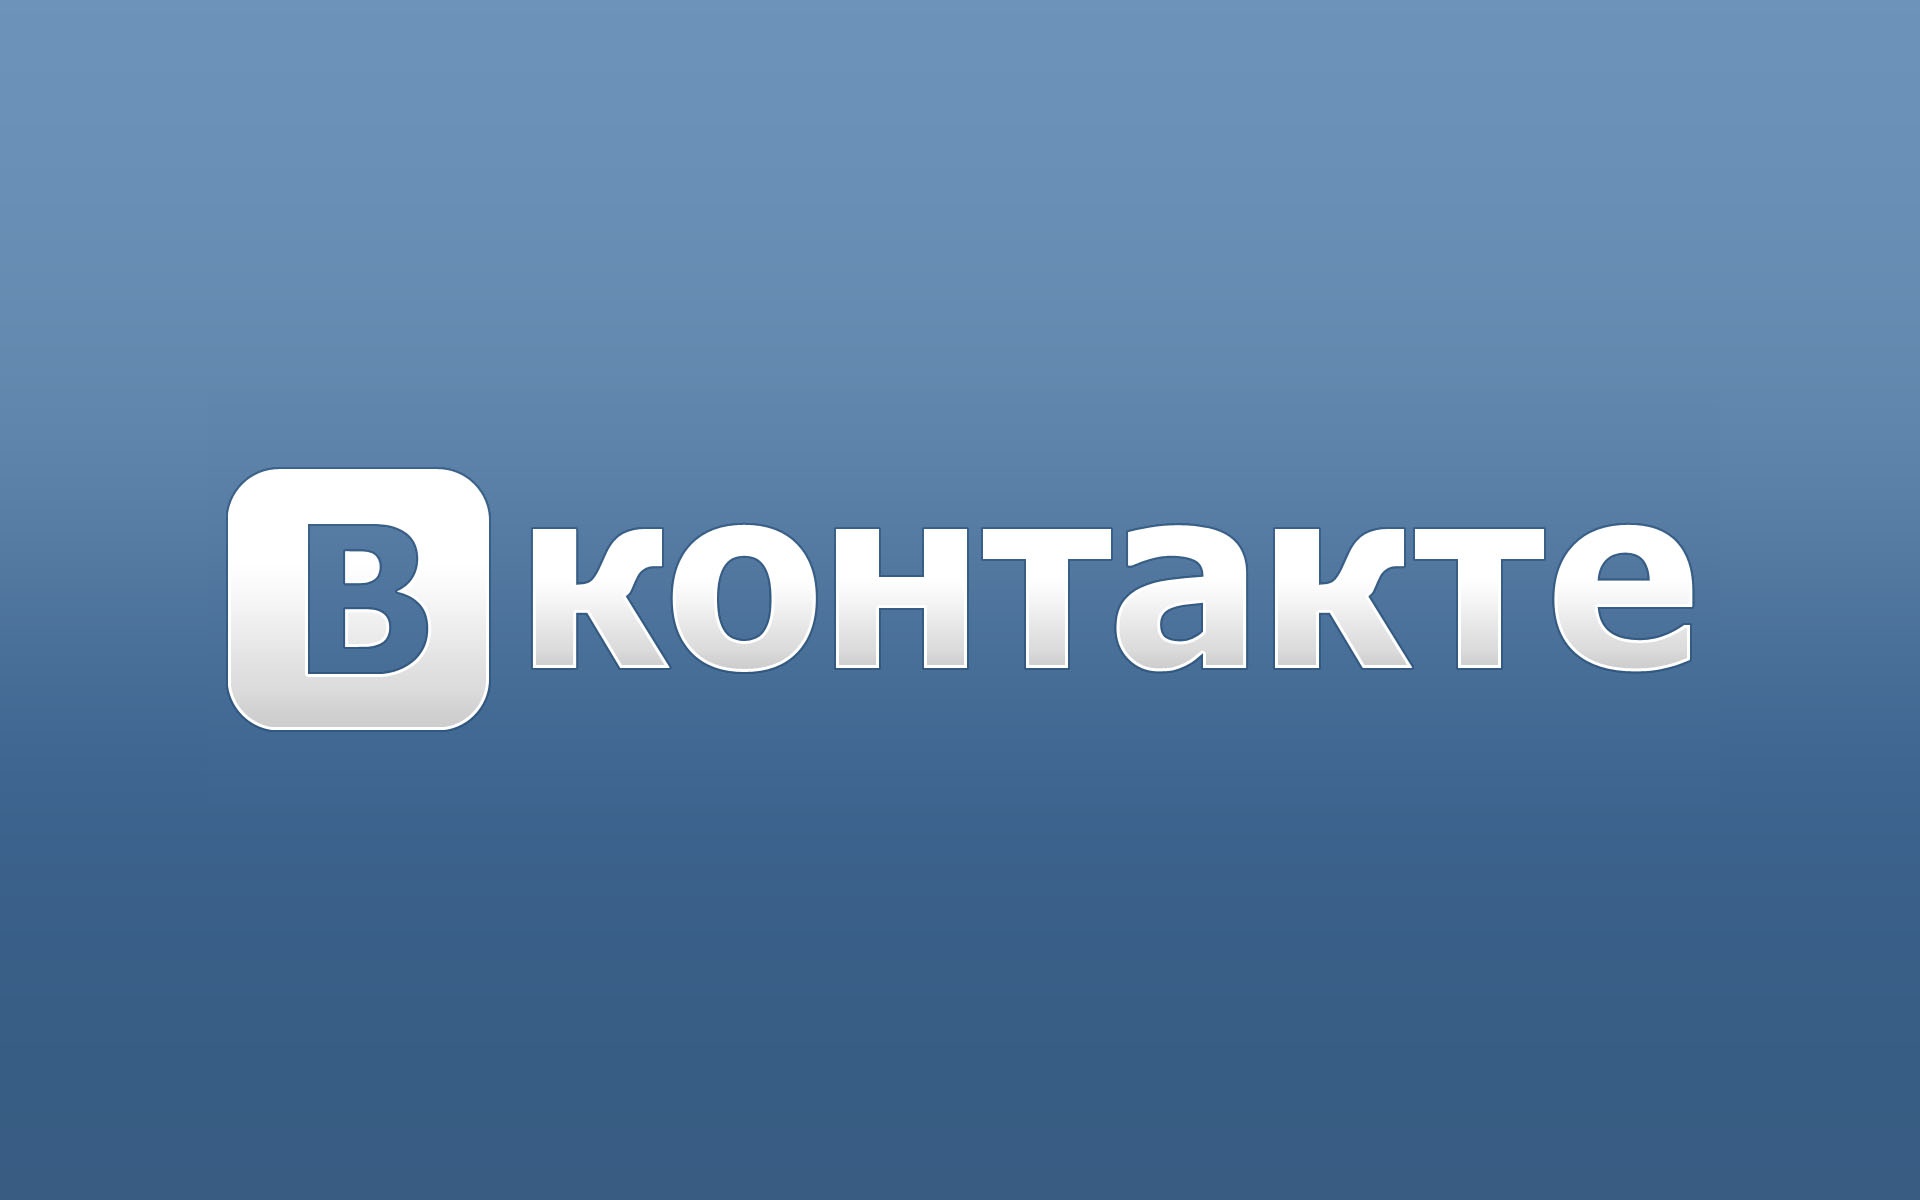 Социальная сеть ВКонтакте предлагает размещать лживую информацию об Украине